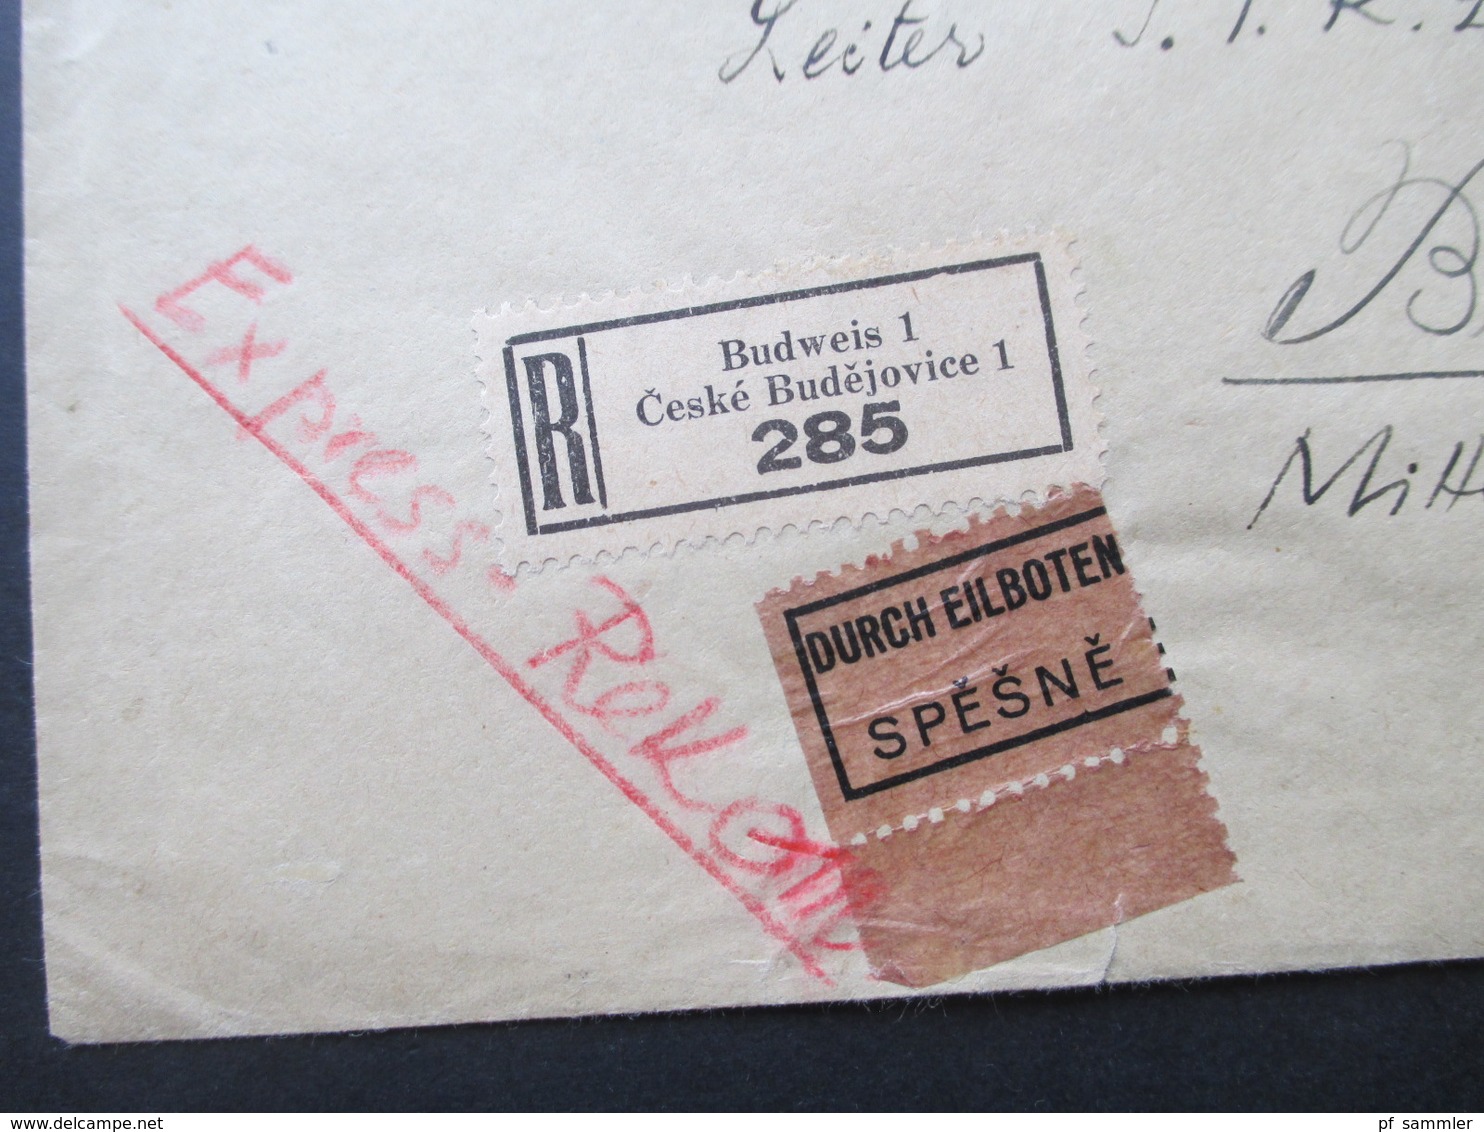 Böhmen Und Mähren 1942 MiF Einschreiben / Durch Eilboten Spesne Zweisprachiger R-Zettel Budweis 1 Ceske Budejovice 1 - Lettres & Documents